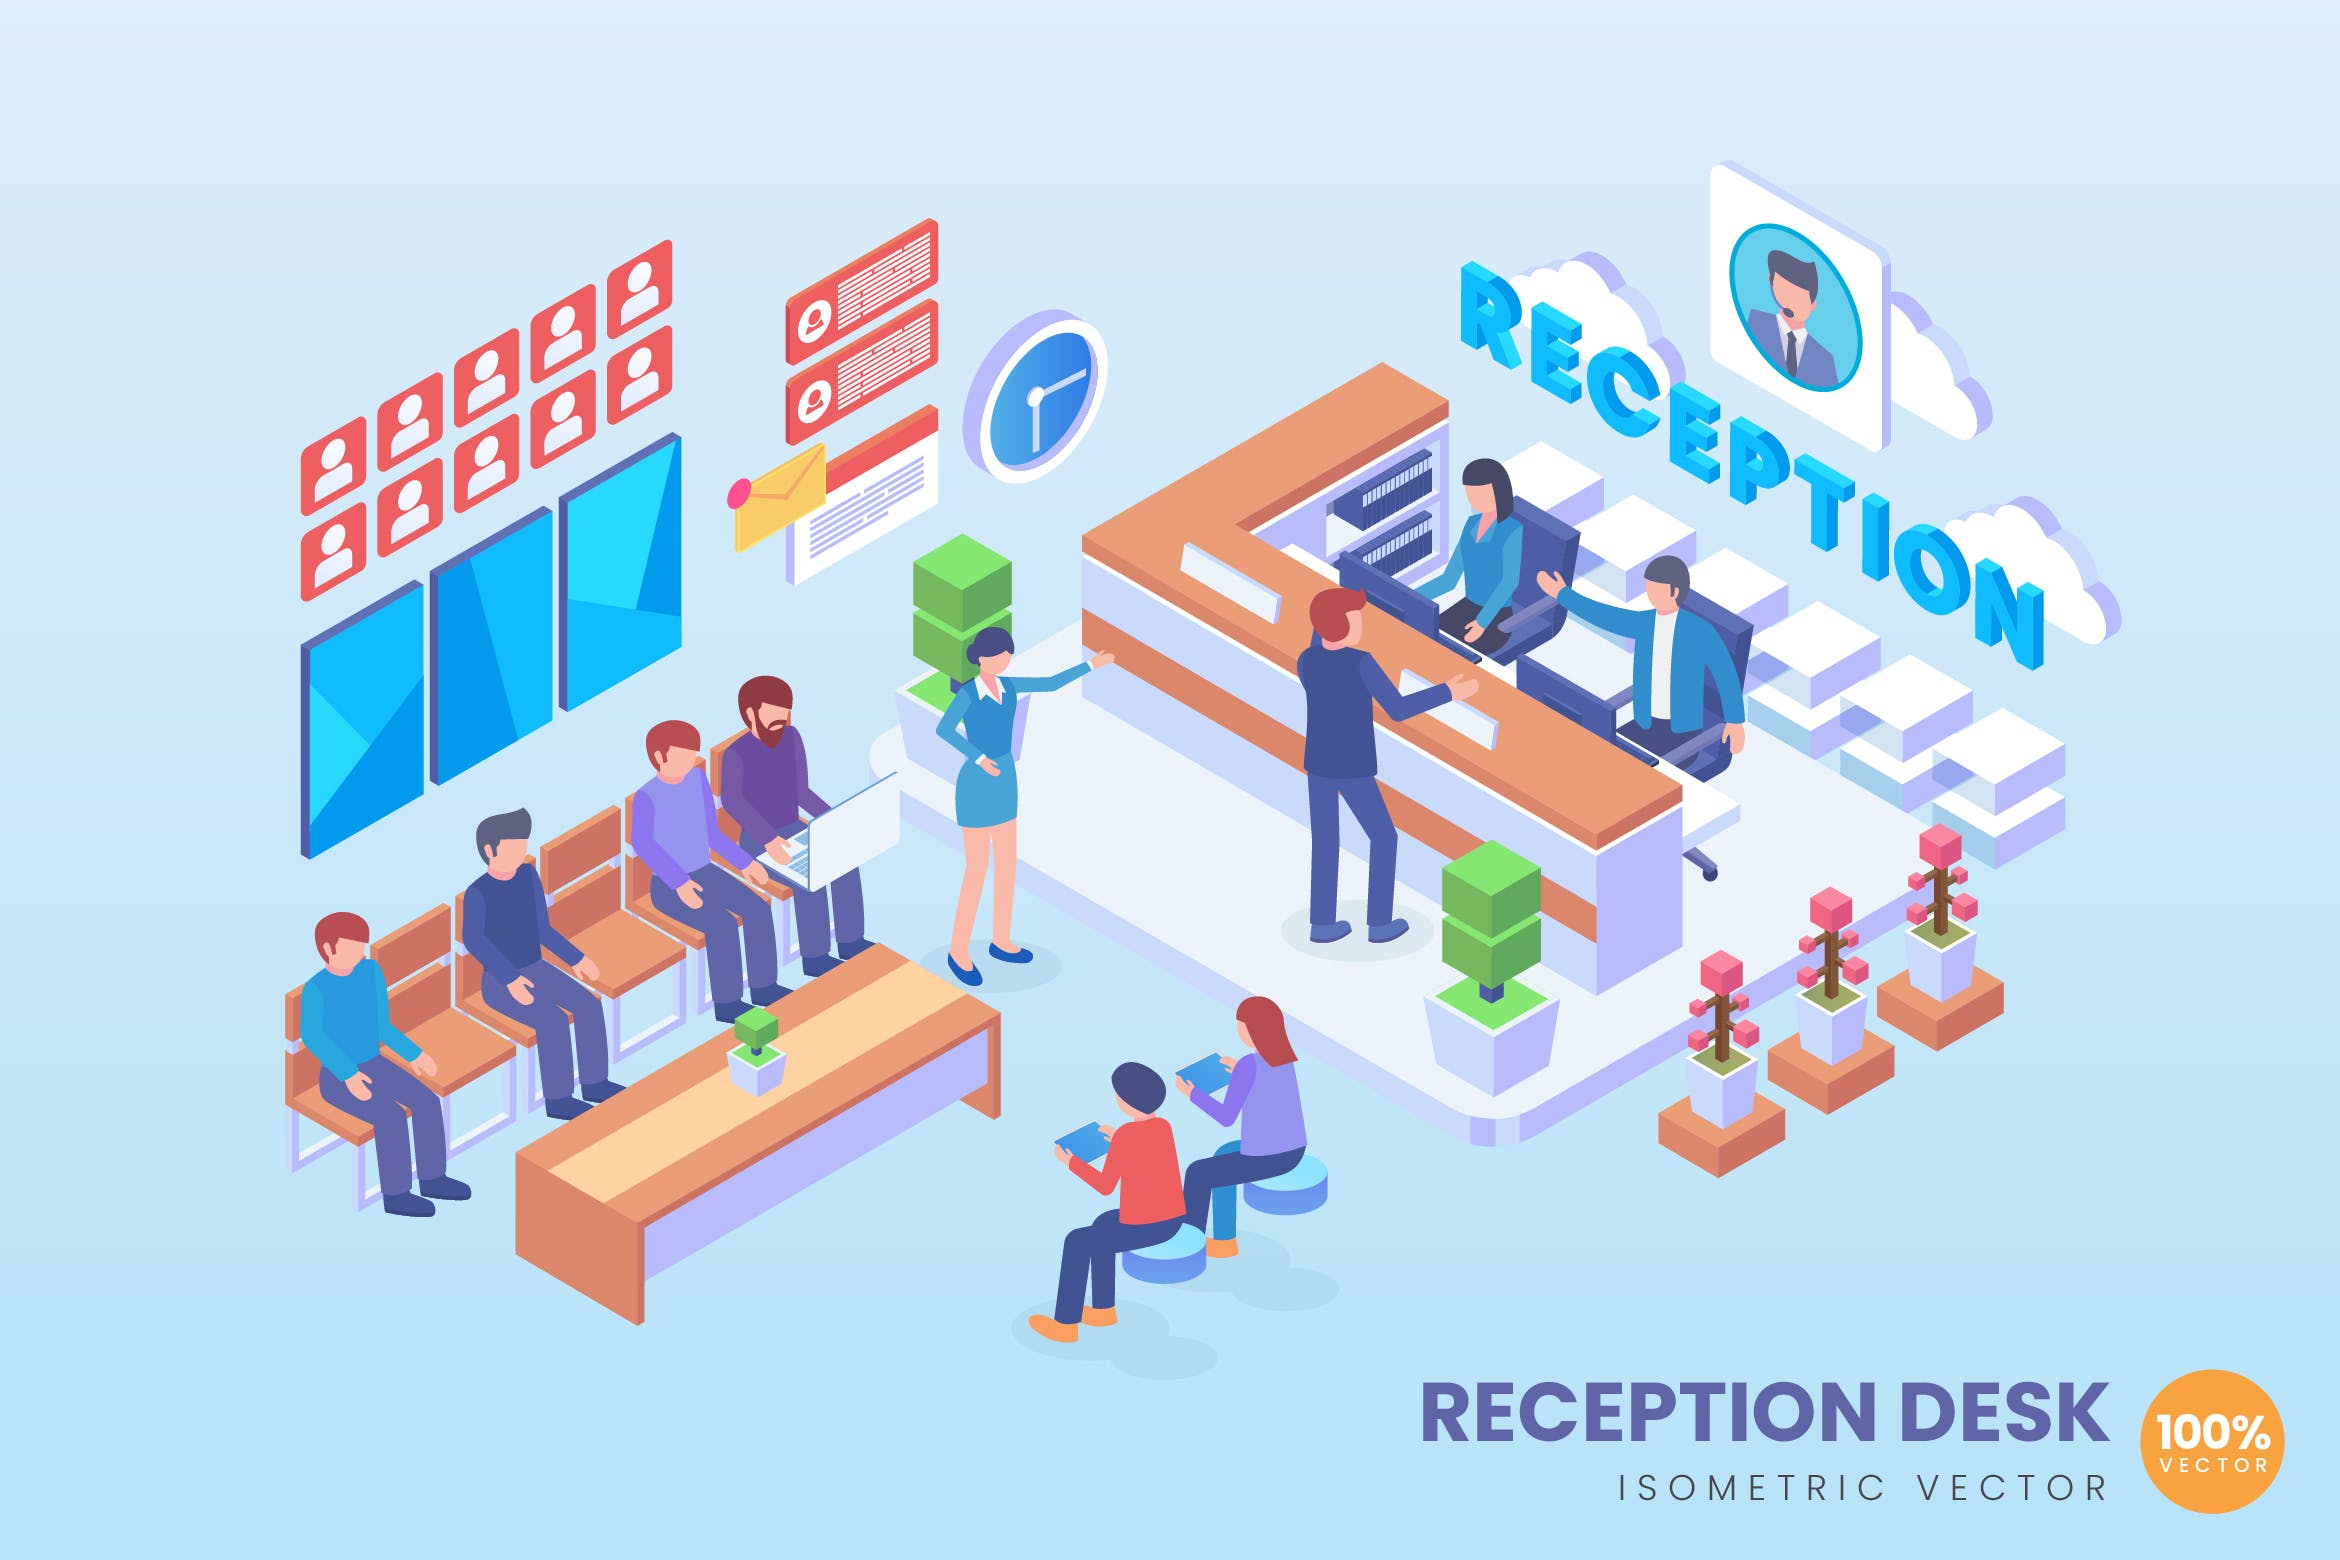 客户服务中心场景2.5D等距概念矢量插画素材库精选 Isometric Reception Desk Vector Concept插图